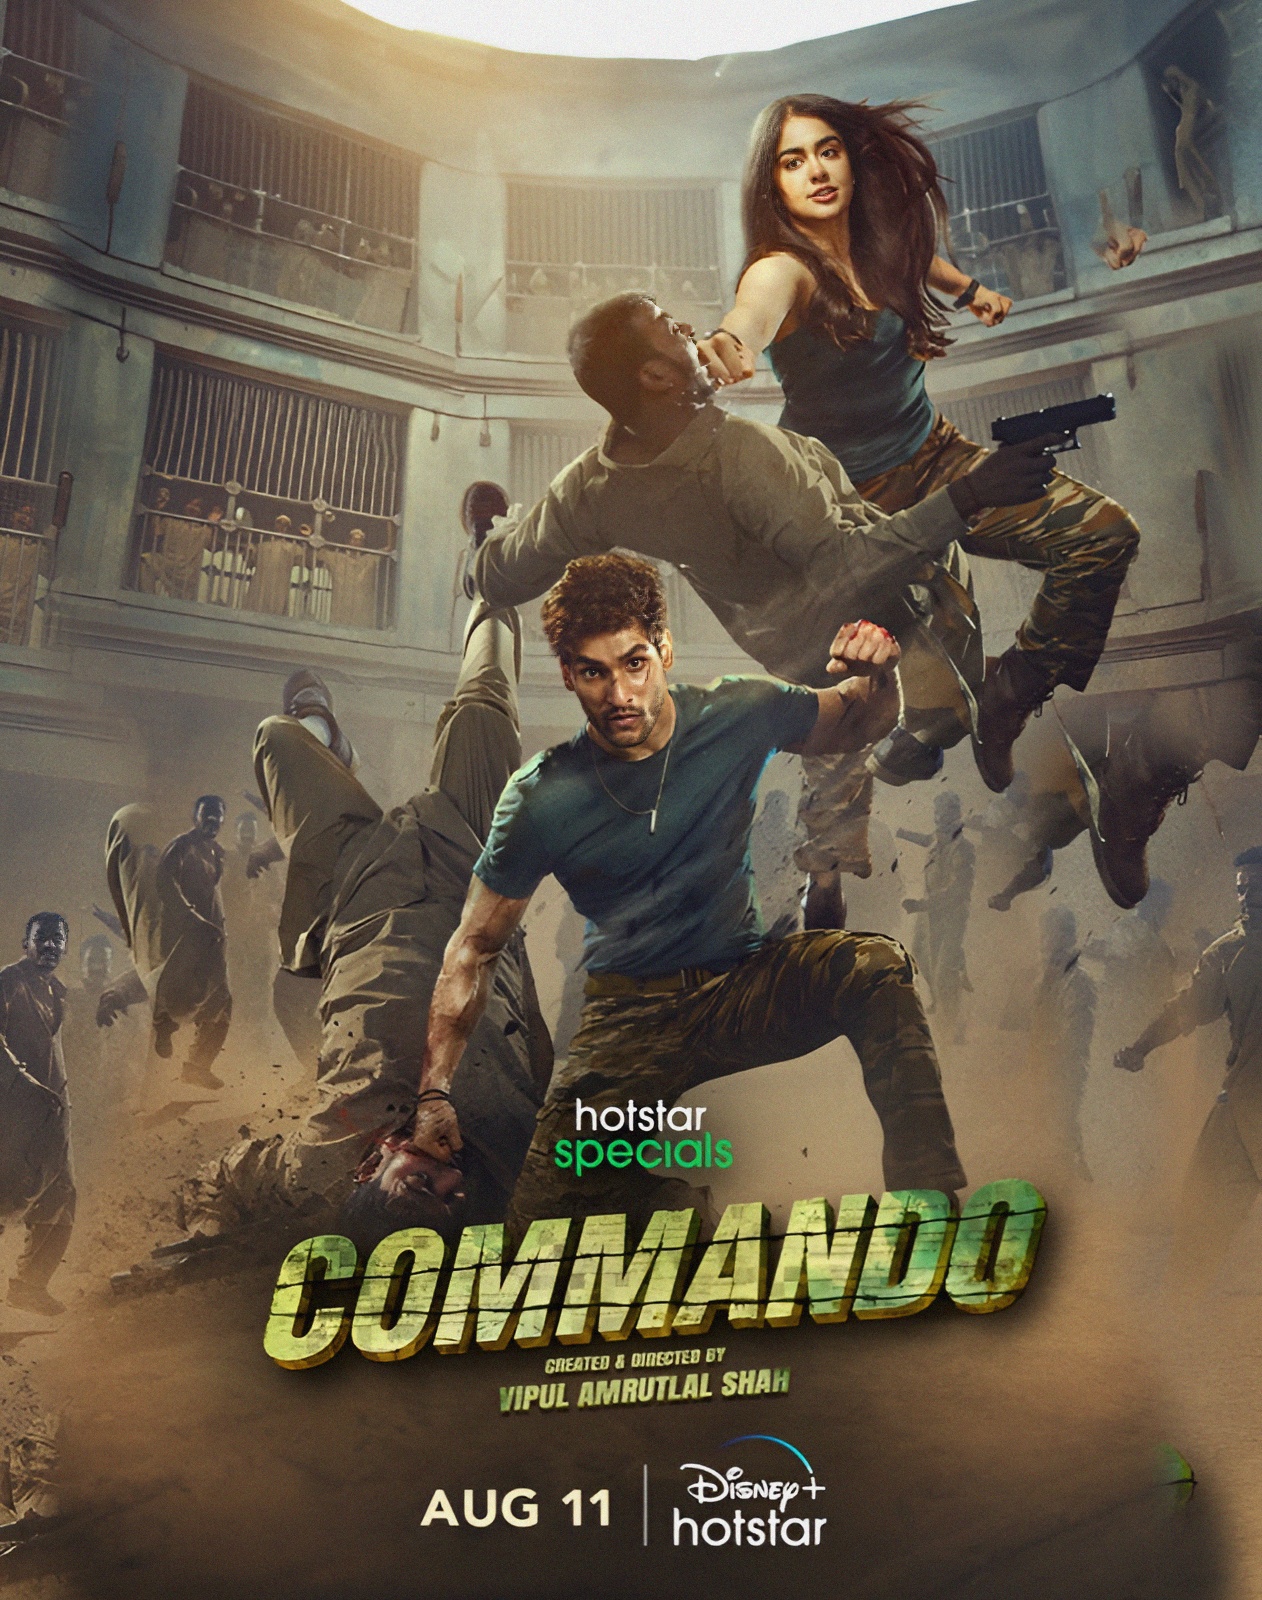 commando full movie download